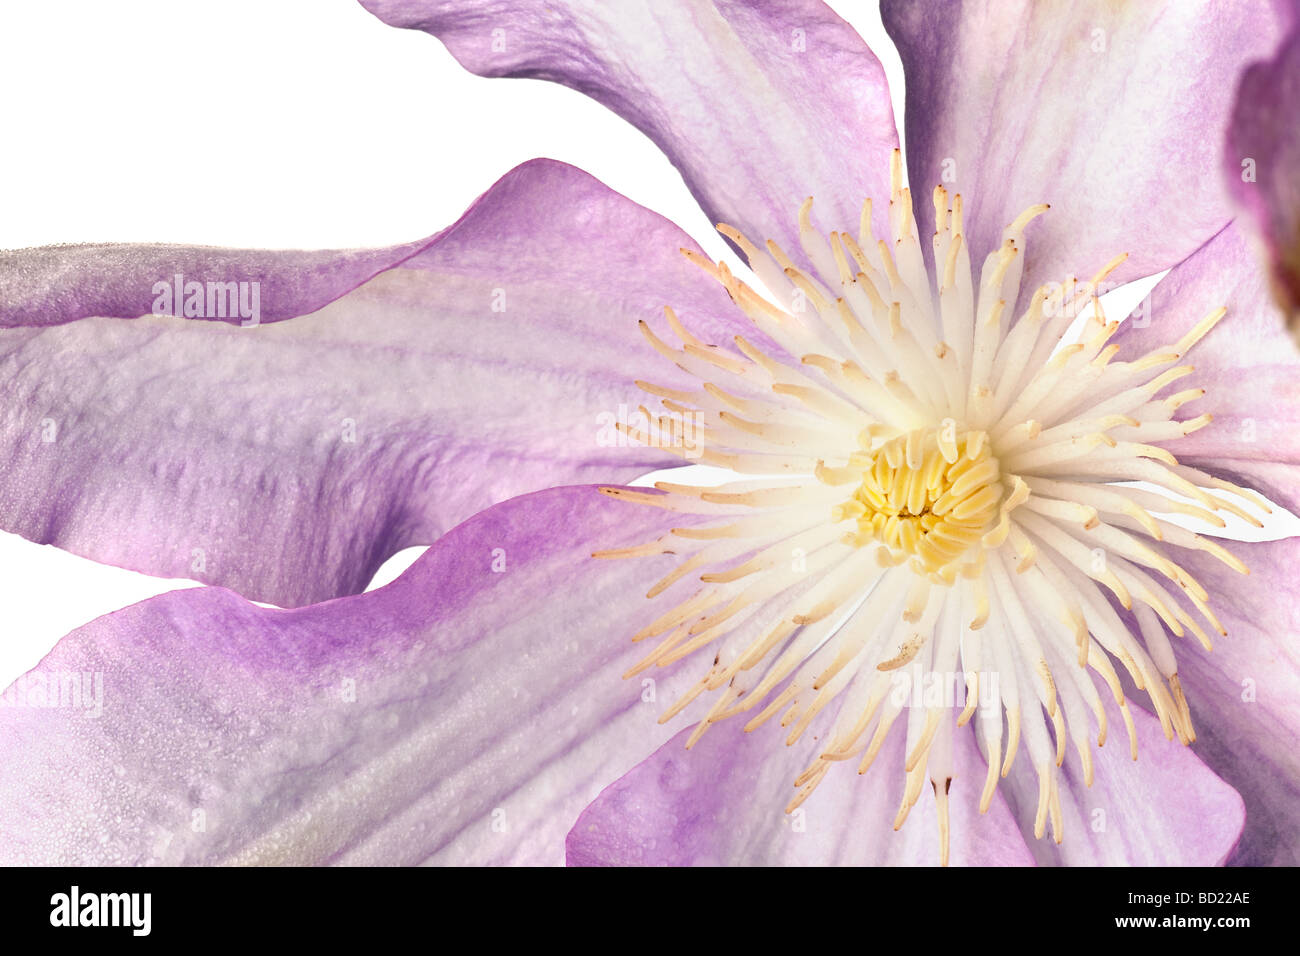 La clematide blossom isolato su uno sfondo bianco Foto Stock